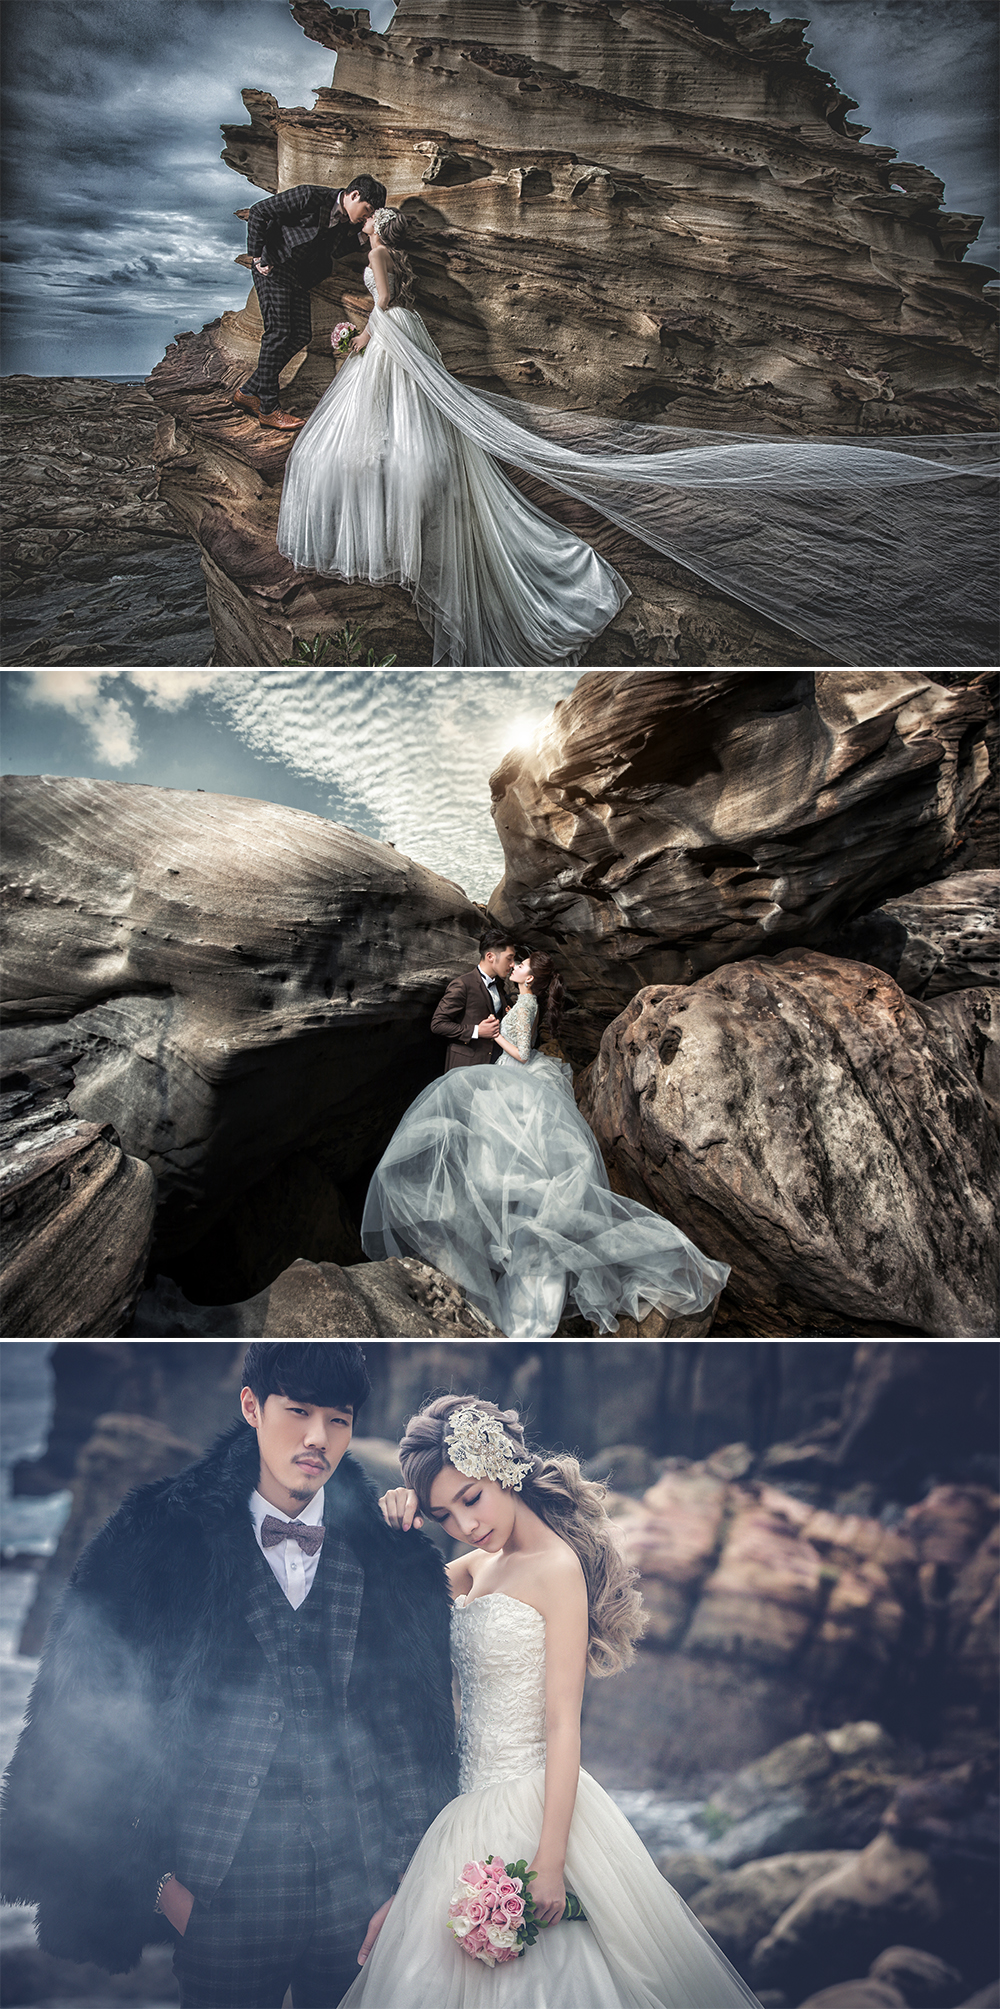 台灣婚紗照外拍景點 - 九份南雅奇岩